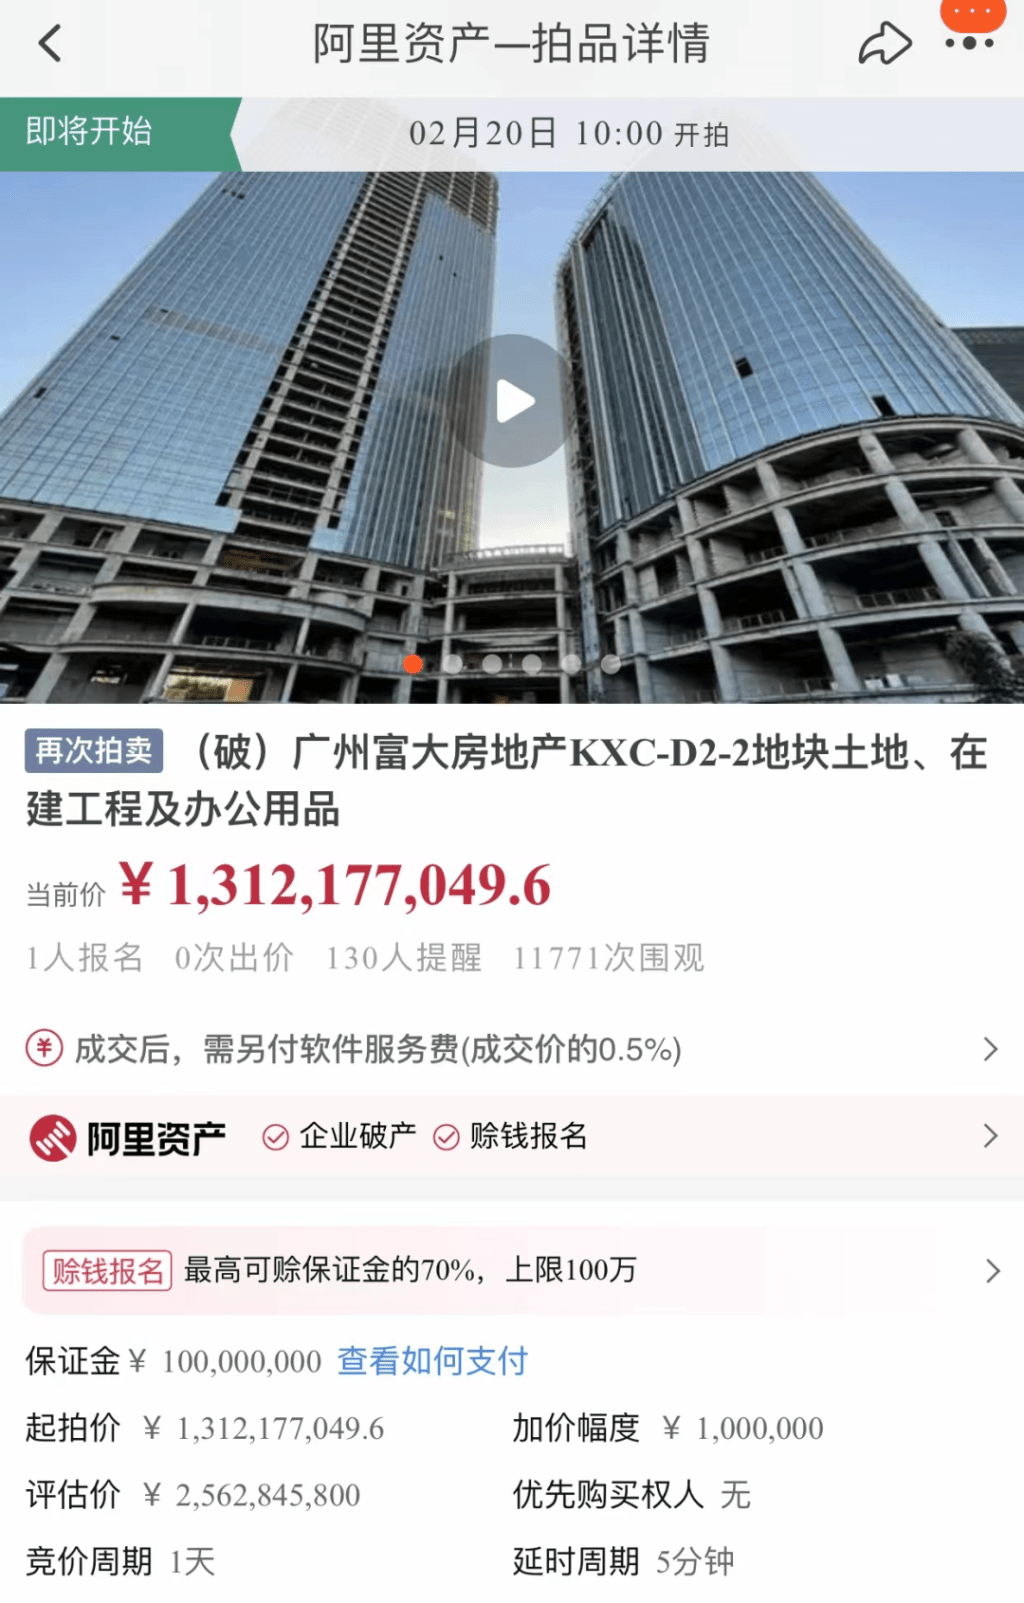 阿里拍賣網顯示松日總部大樓獲成功拍賣。